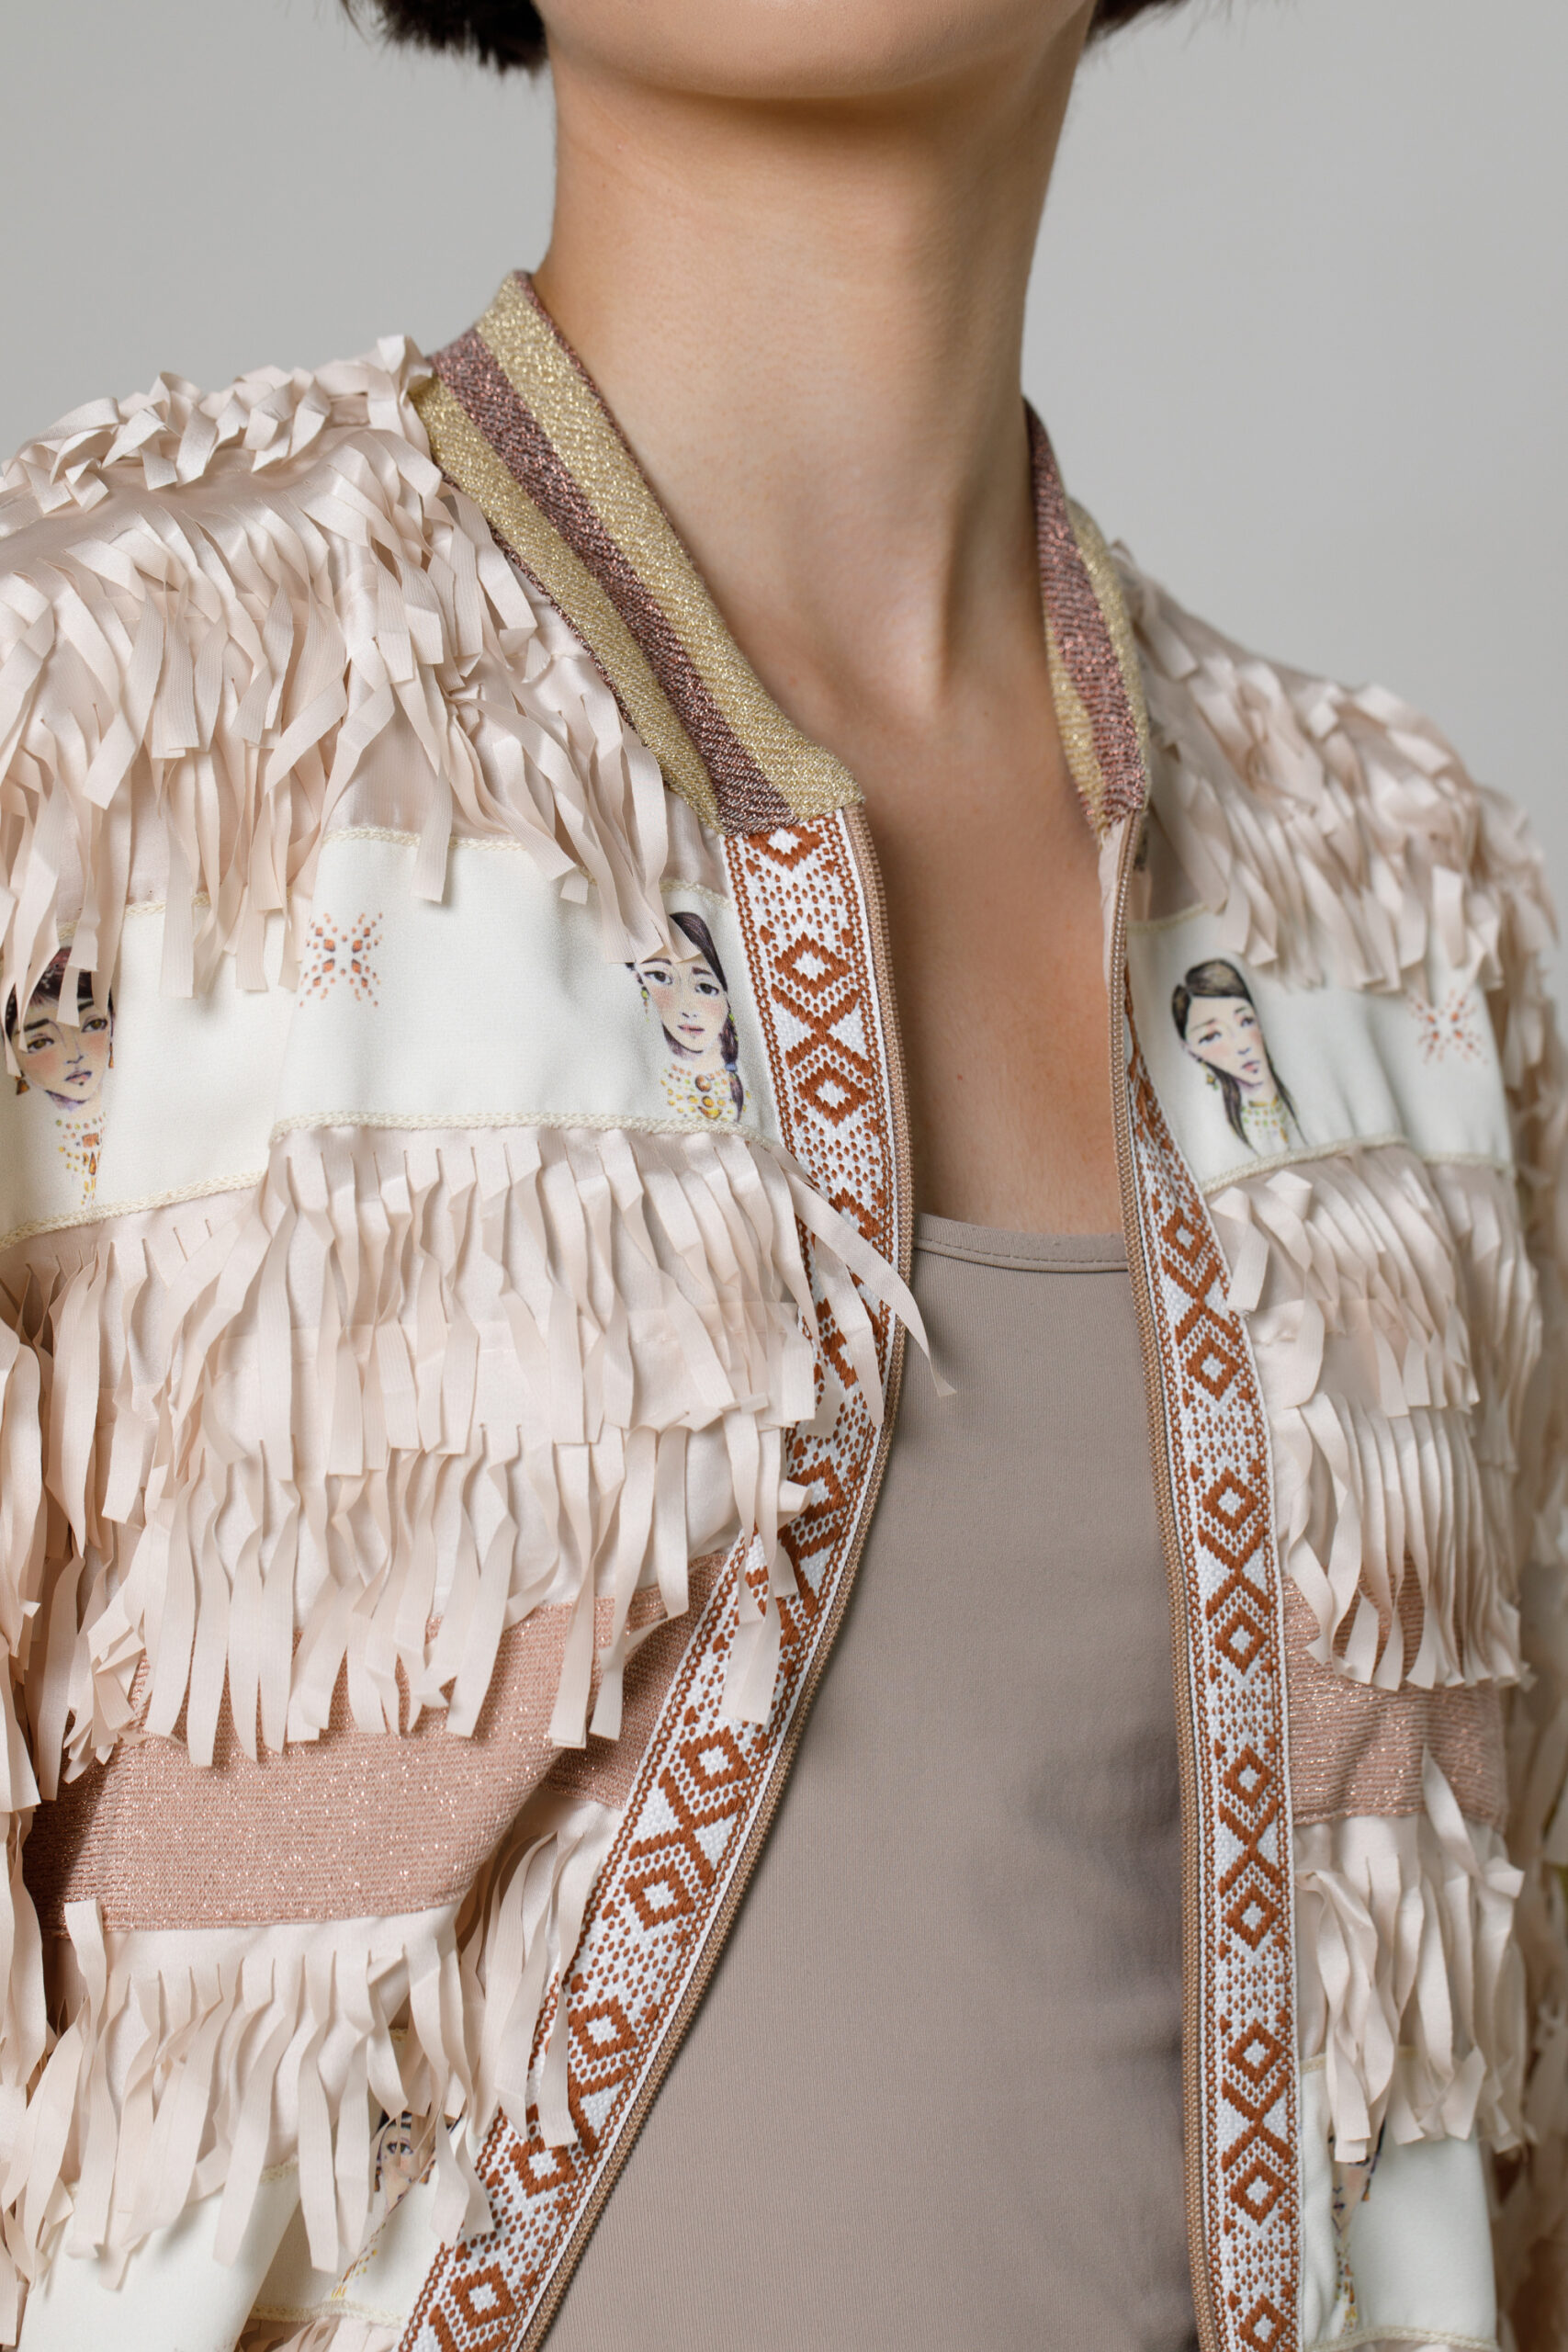 Jacheta NIABI din saten cu fanjuri. Materiale naturale, design unicat, cu broderie si aplicatii handmade